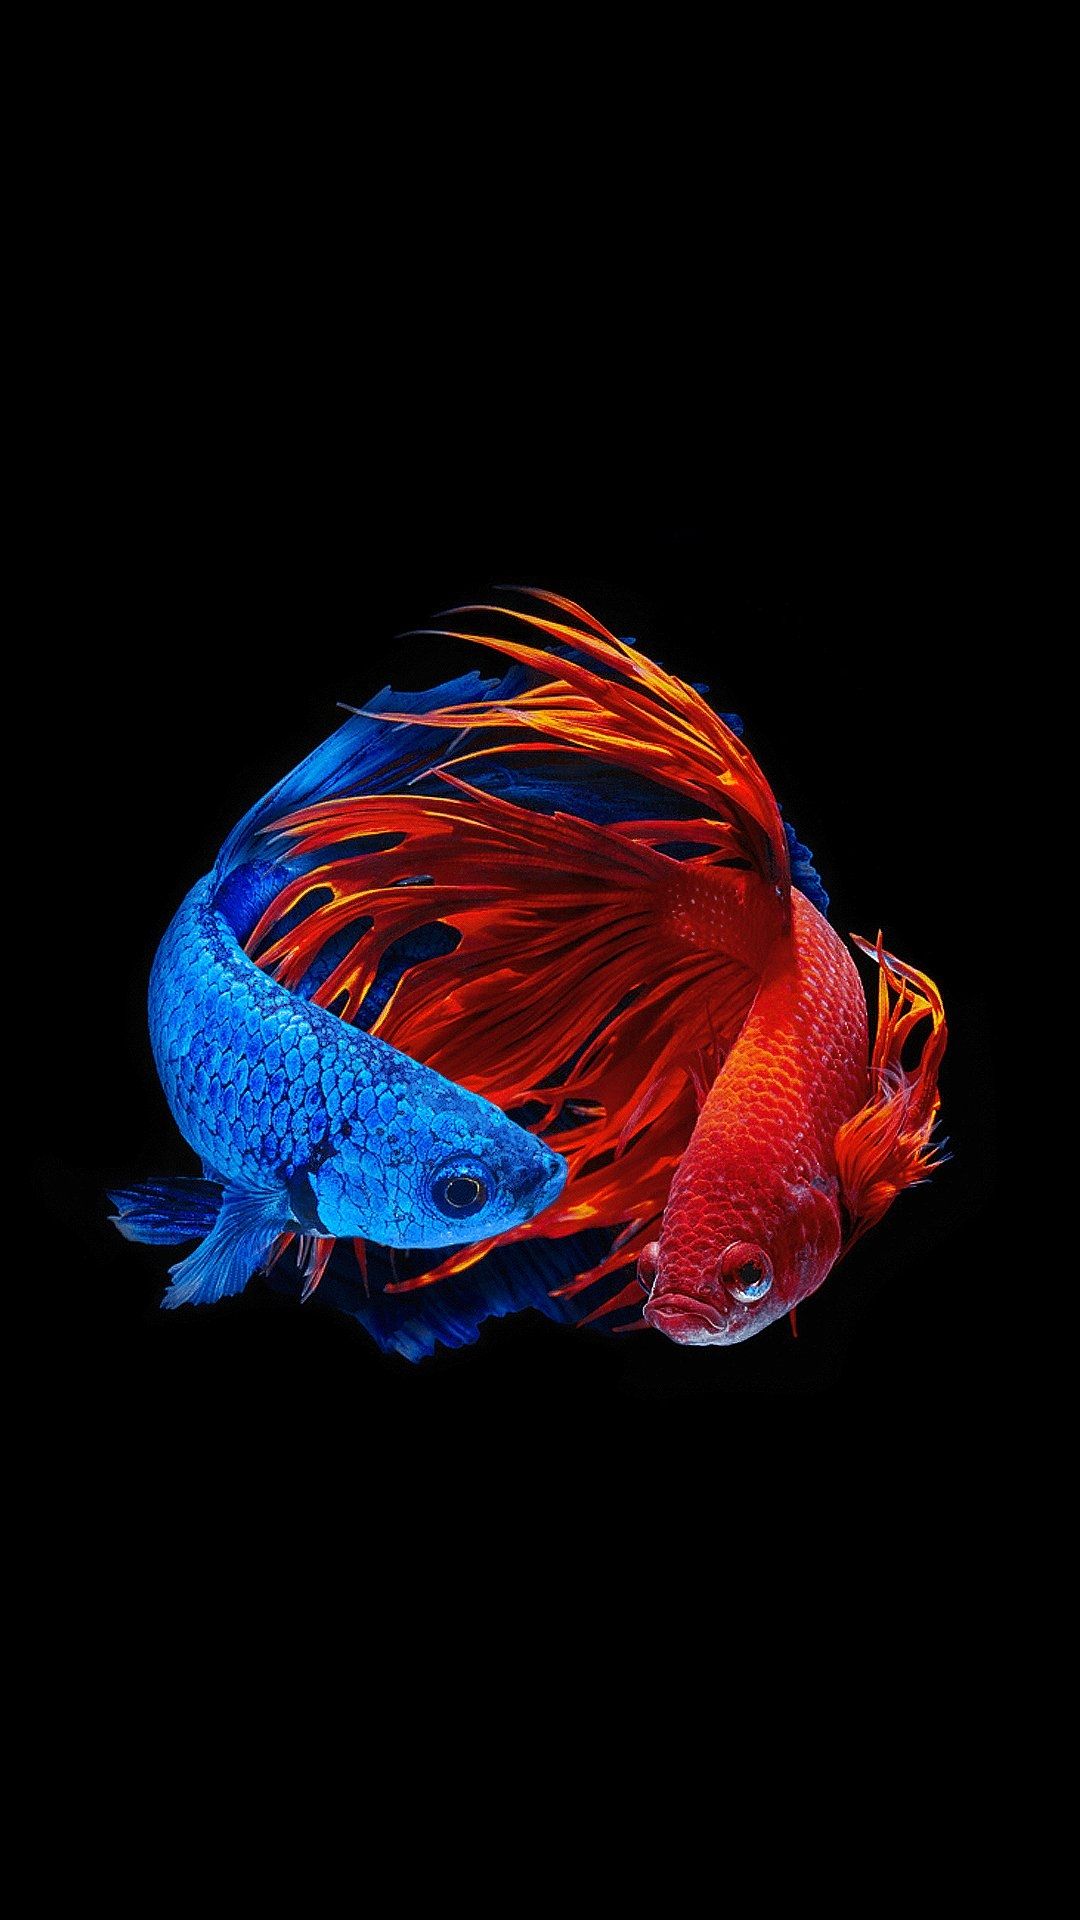 iphone 5s fondo de pantalla,azul,azul eléctrico,azul cobalto,peces de aguas profundas,biología marina